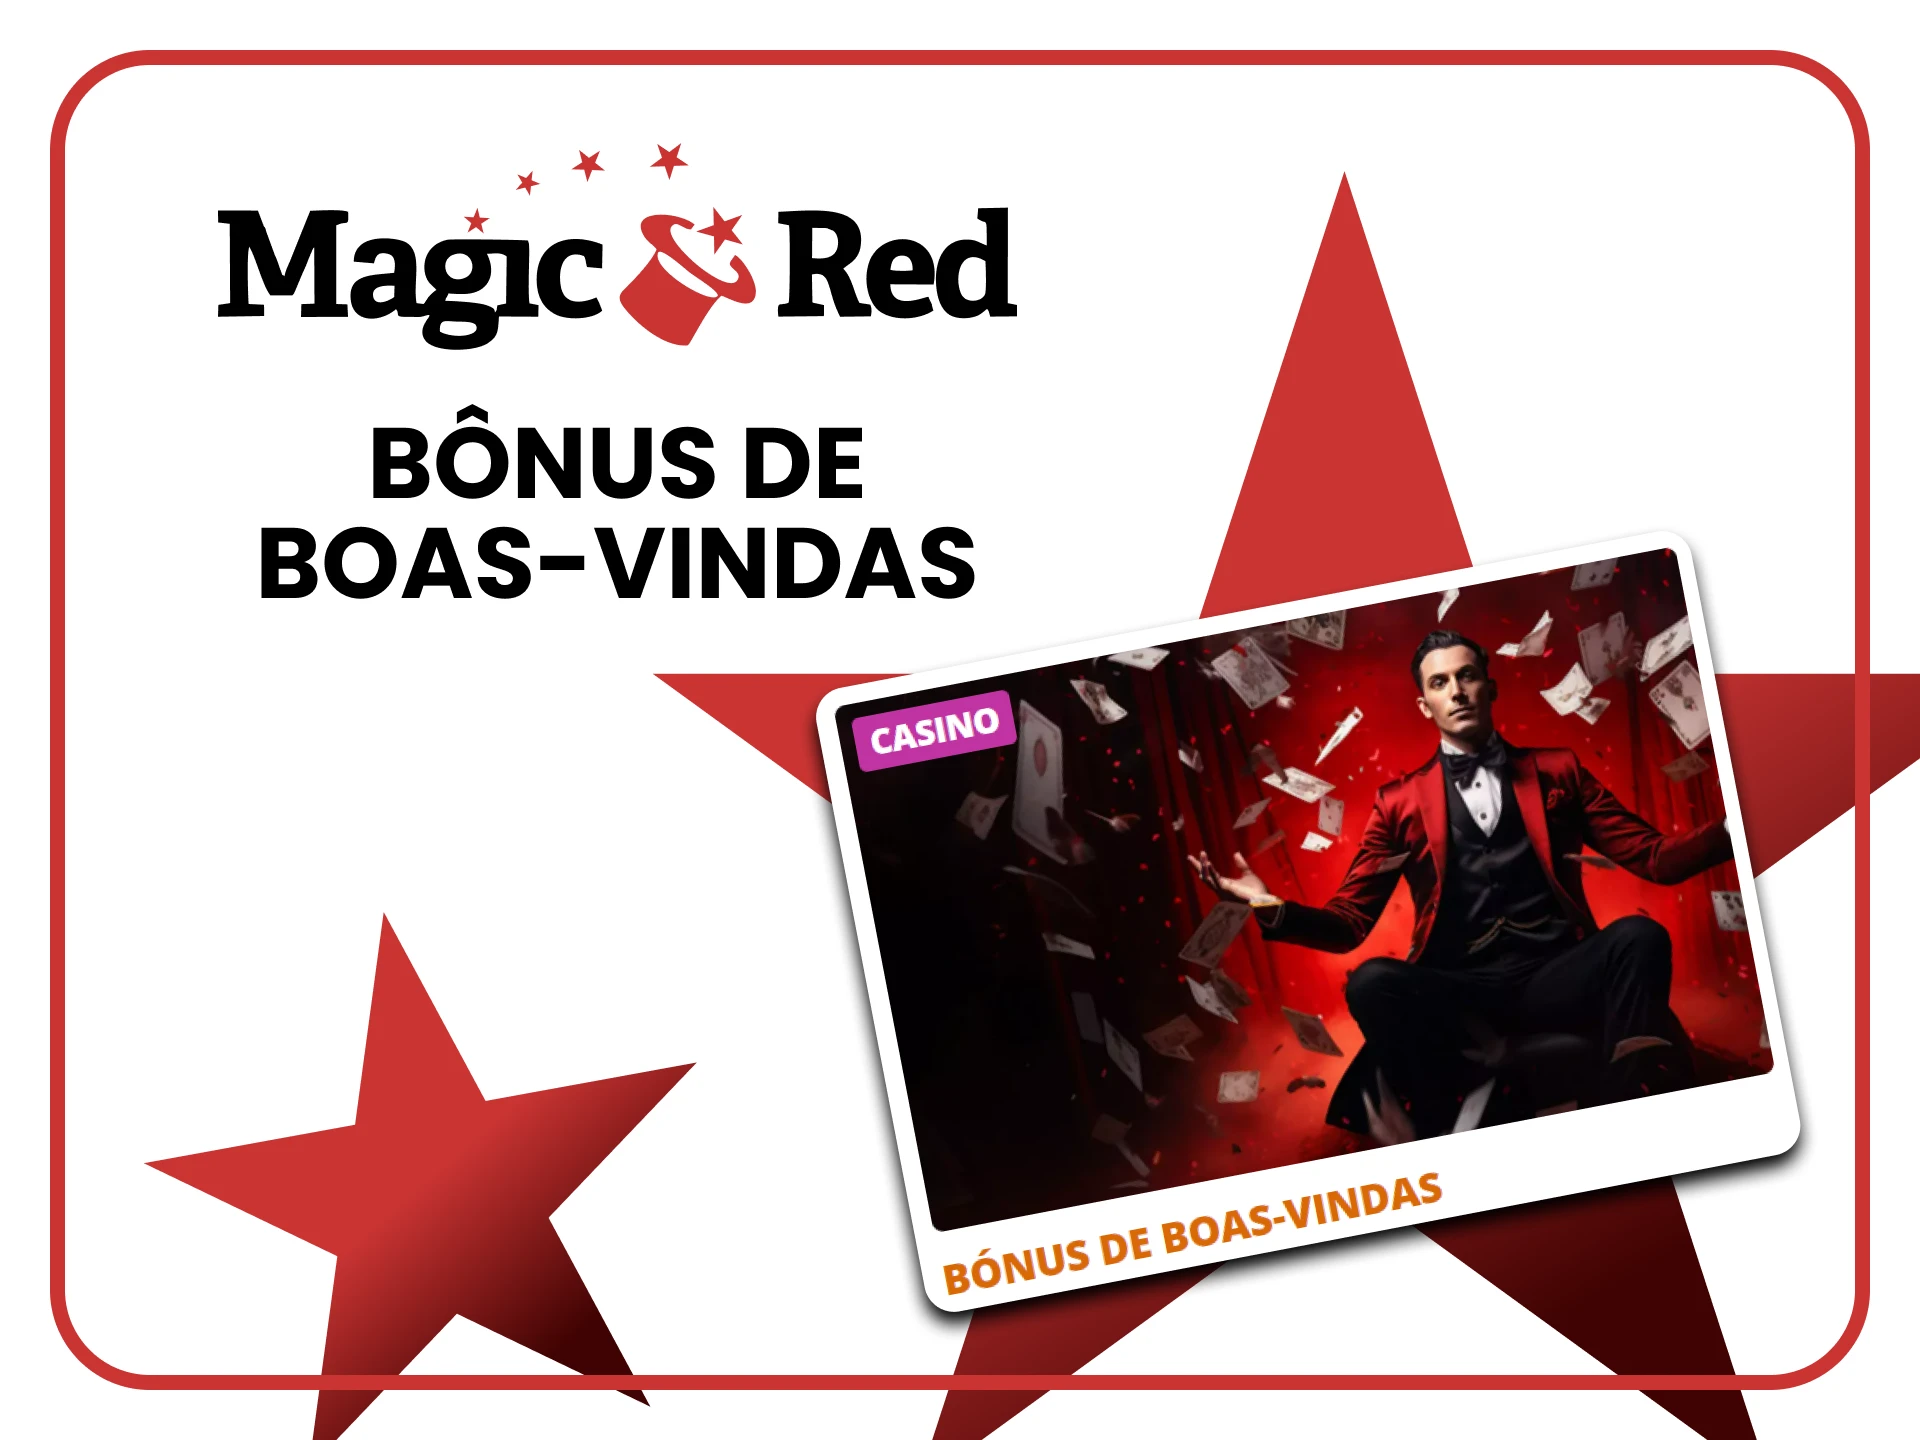 Magic Red oferece um bônus de boas-vindas.